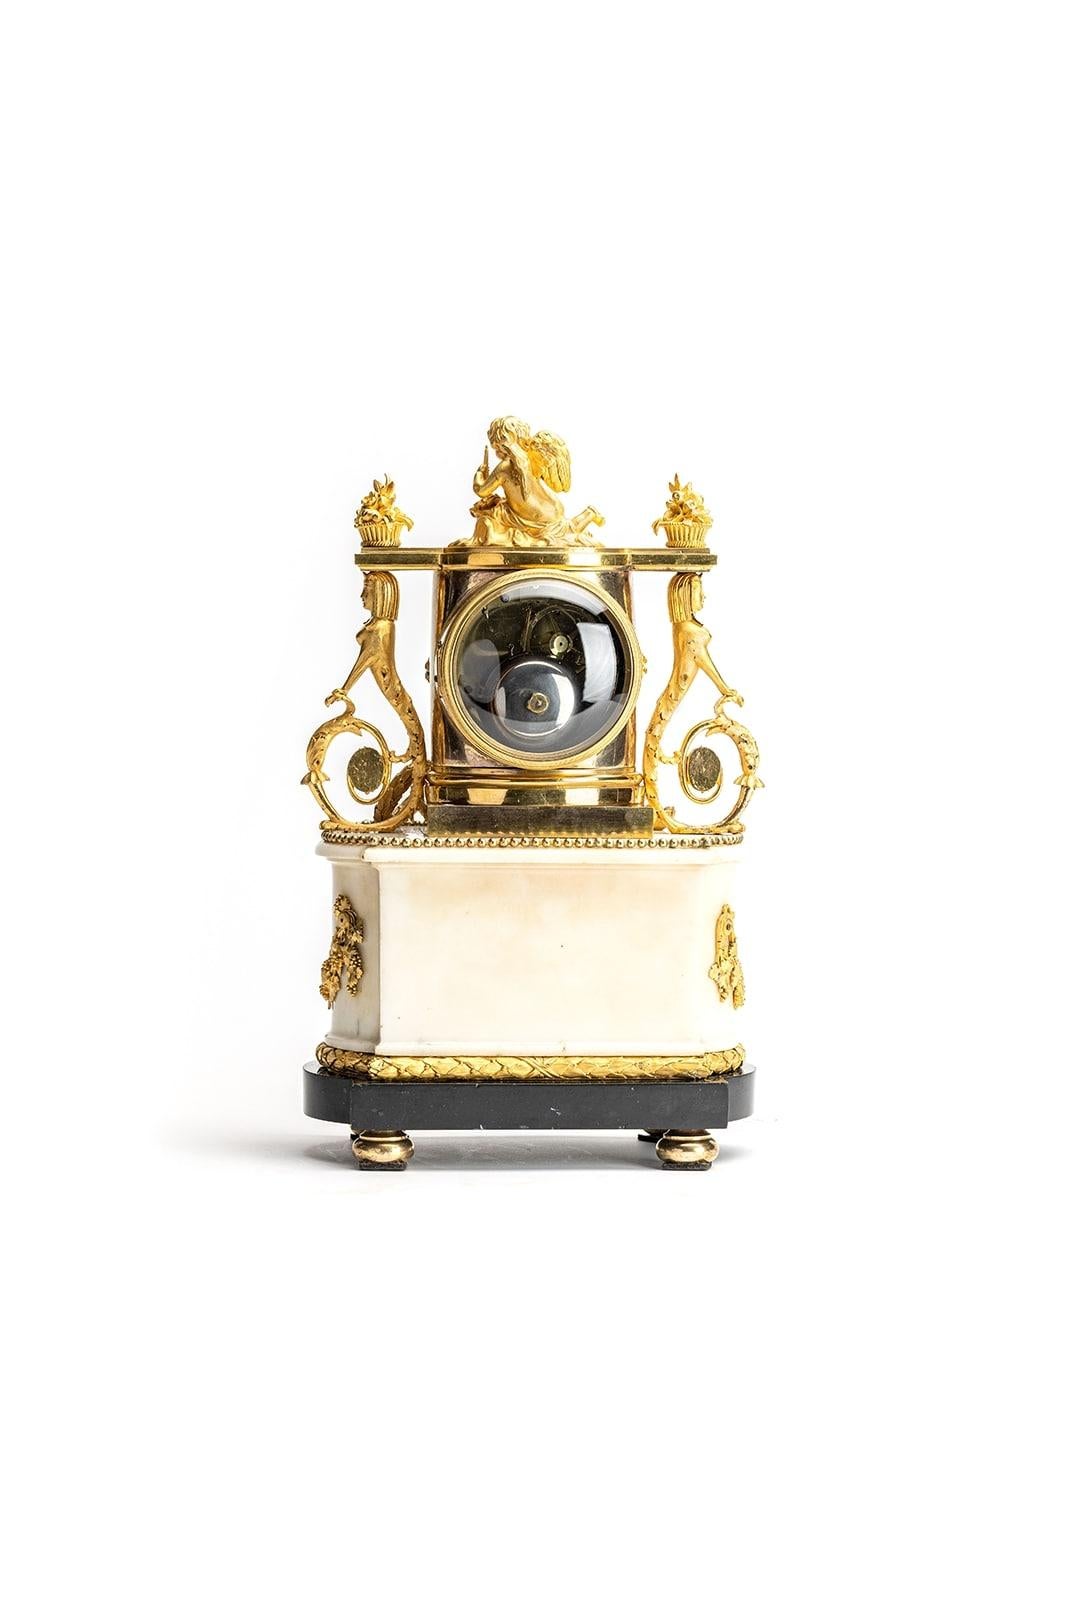 Schöne Pendule von: Louis-François-Amable Molliens 
der ein Uhrmacher war, dessen Werkstatt nacheinander um 1800 in der Rue Saint-Honoré und zwischen 1806 und 1815 in der Passage du Grand-Cerf lag (siehe Tardy, Dictionnaire des horlogers français,